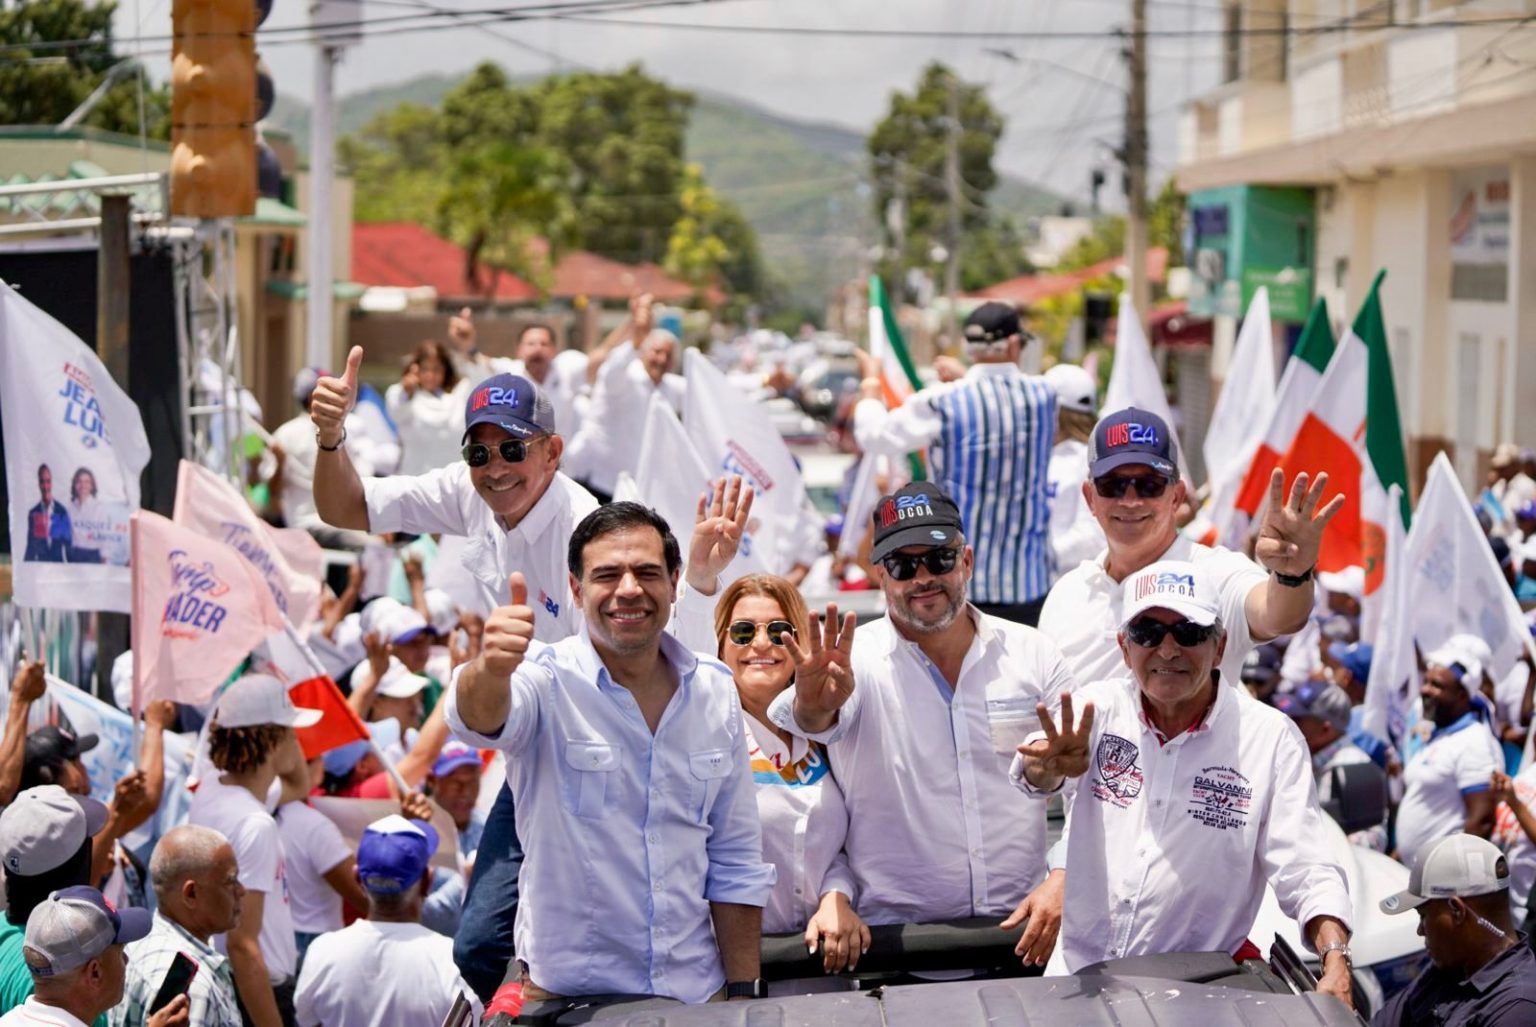 Roberto Angel cierra junto a los candidatos provinciales la campana en Ocoa con impresionante caravana